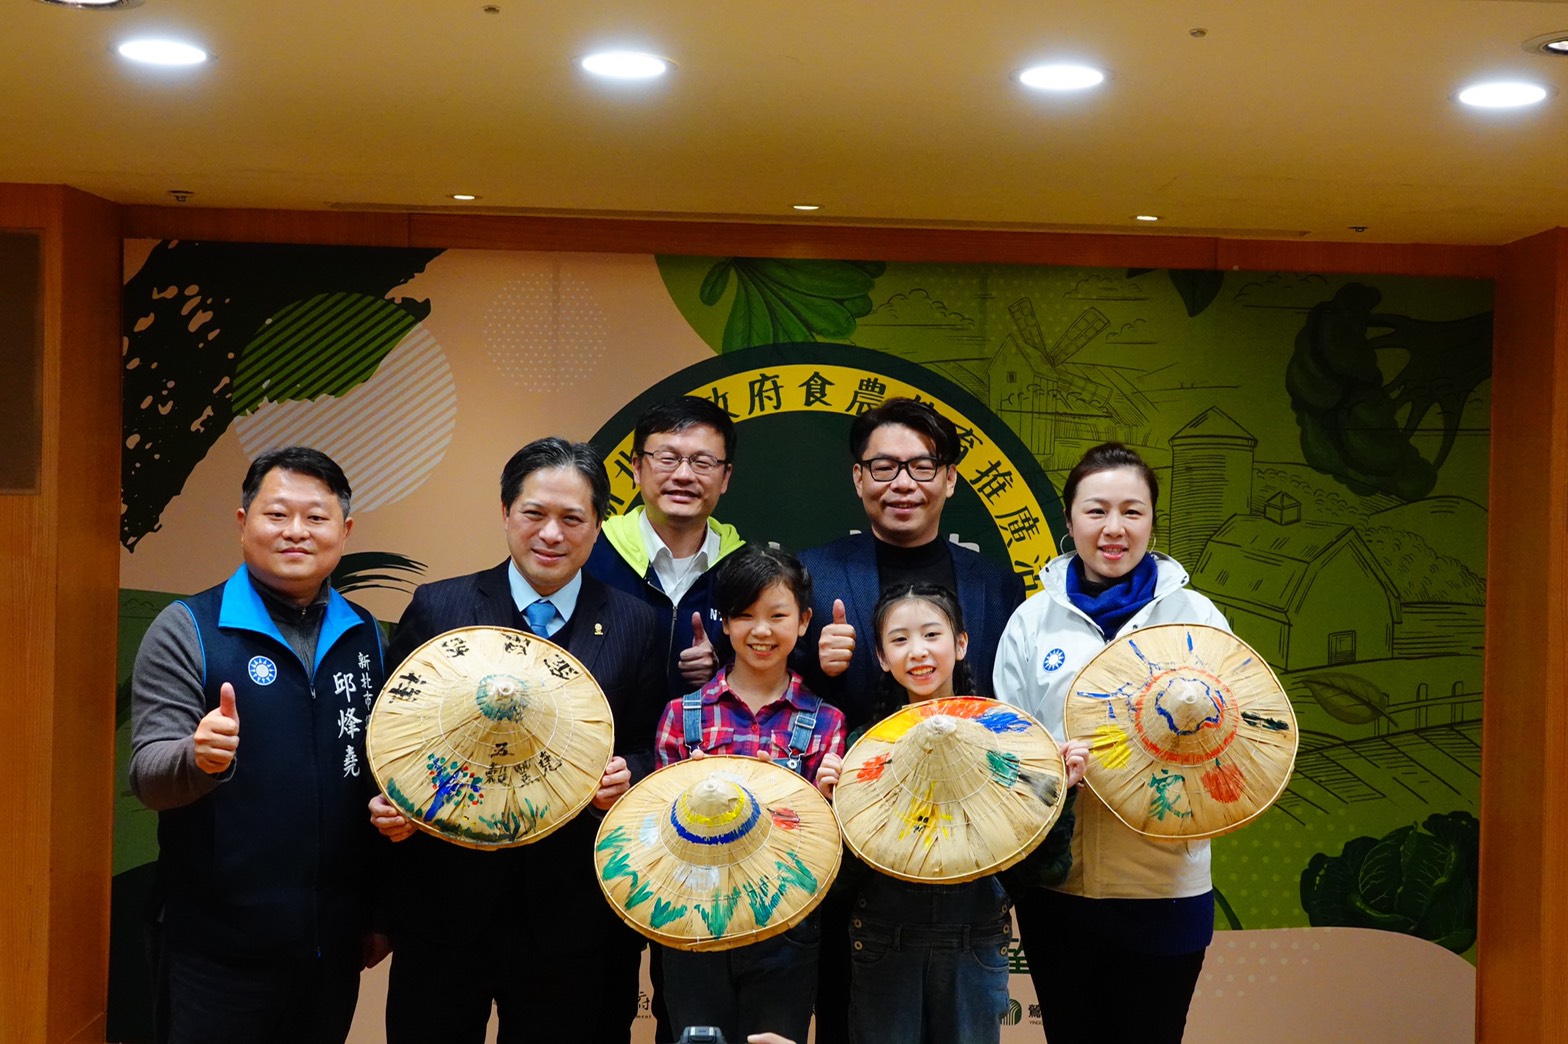 吳明機副市長與學童一同展示彩繪好的斗笠